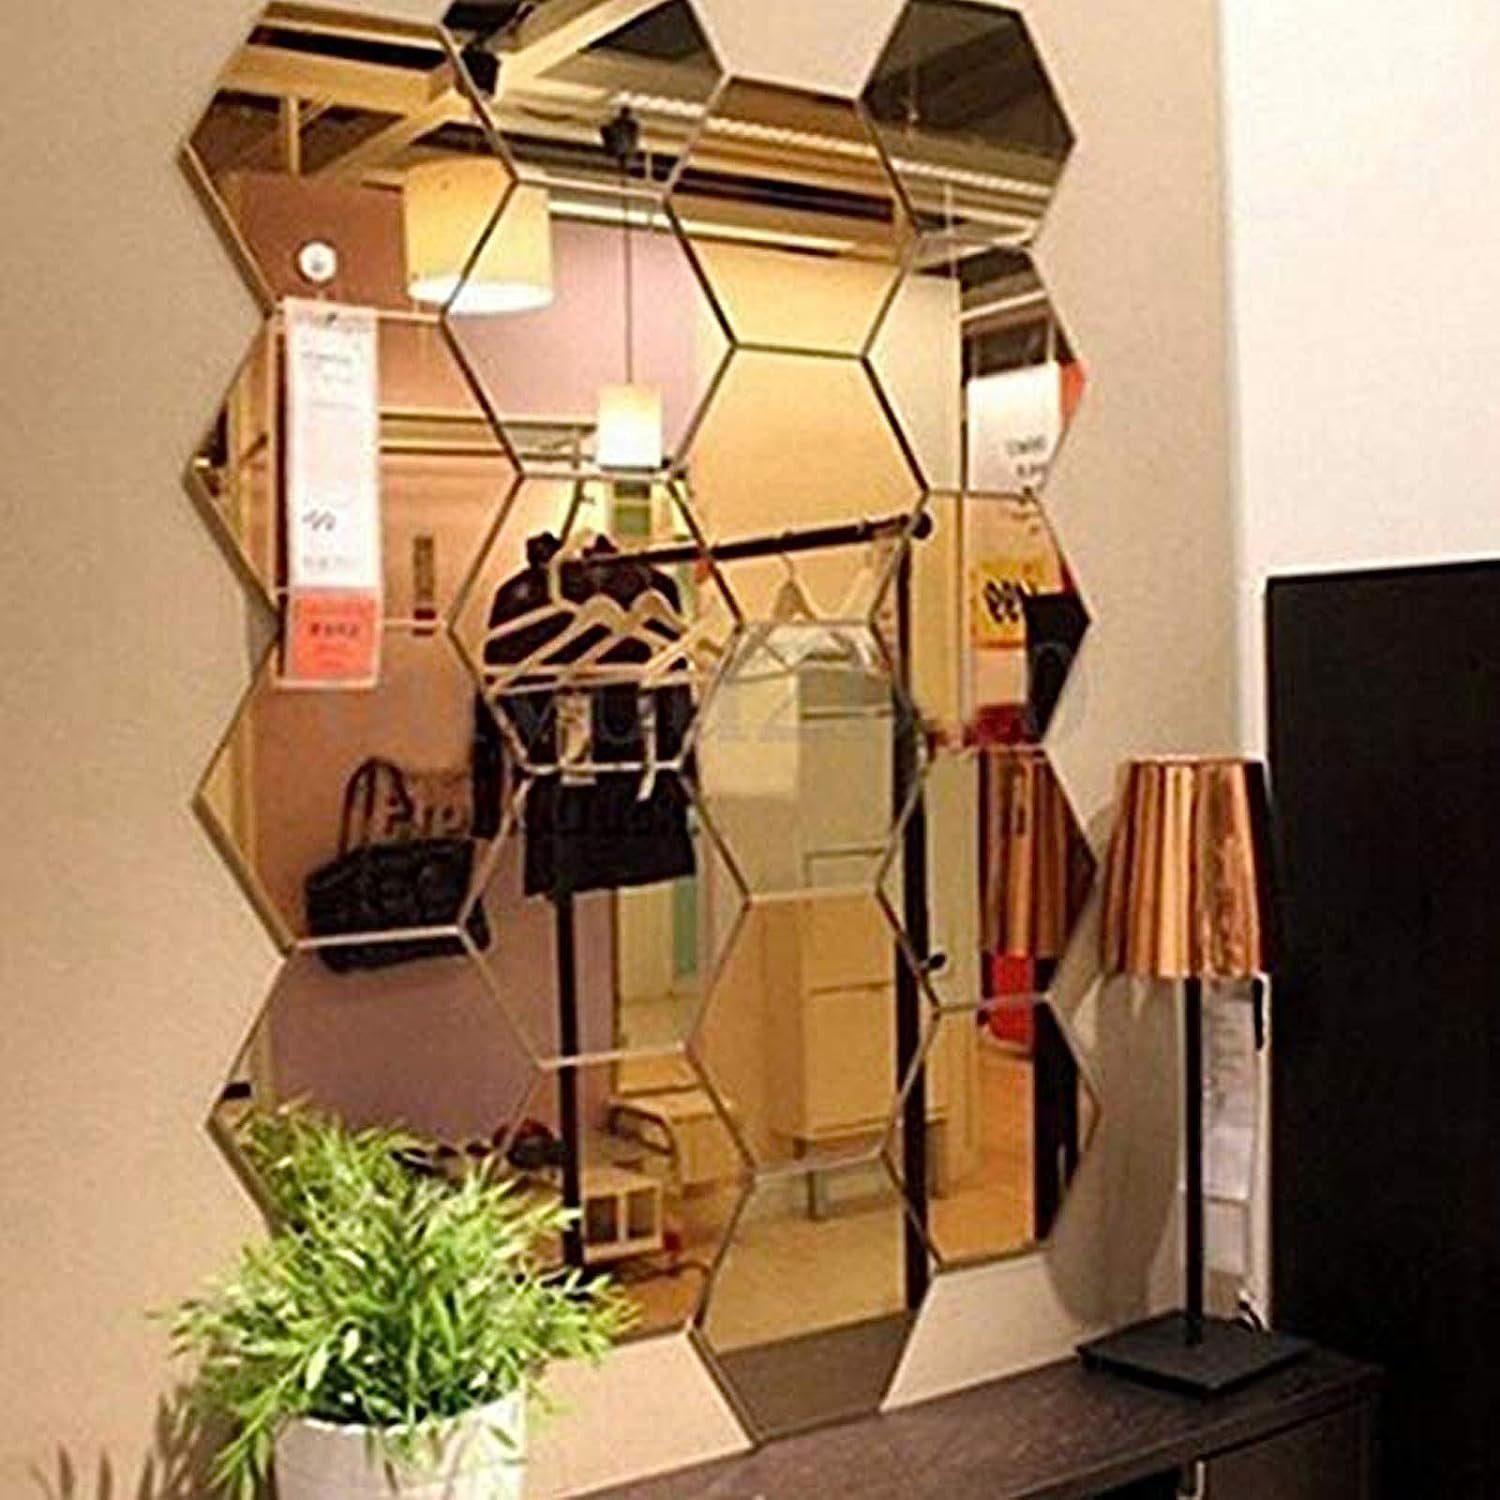 Wandspiegel Stück) gold,Spiegelfliesen,Wandaufkleber,3D,Acryl,(12 FeelGlad Spiegel